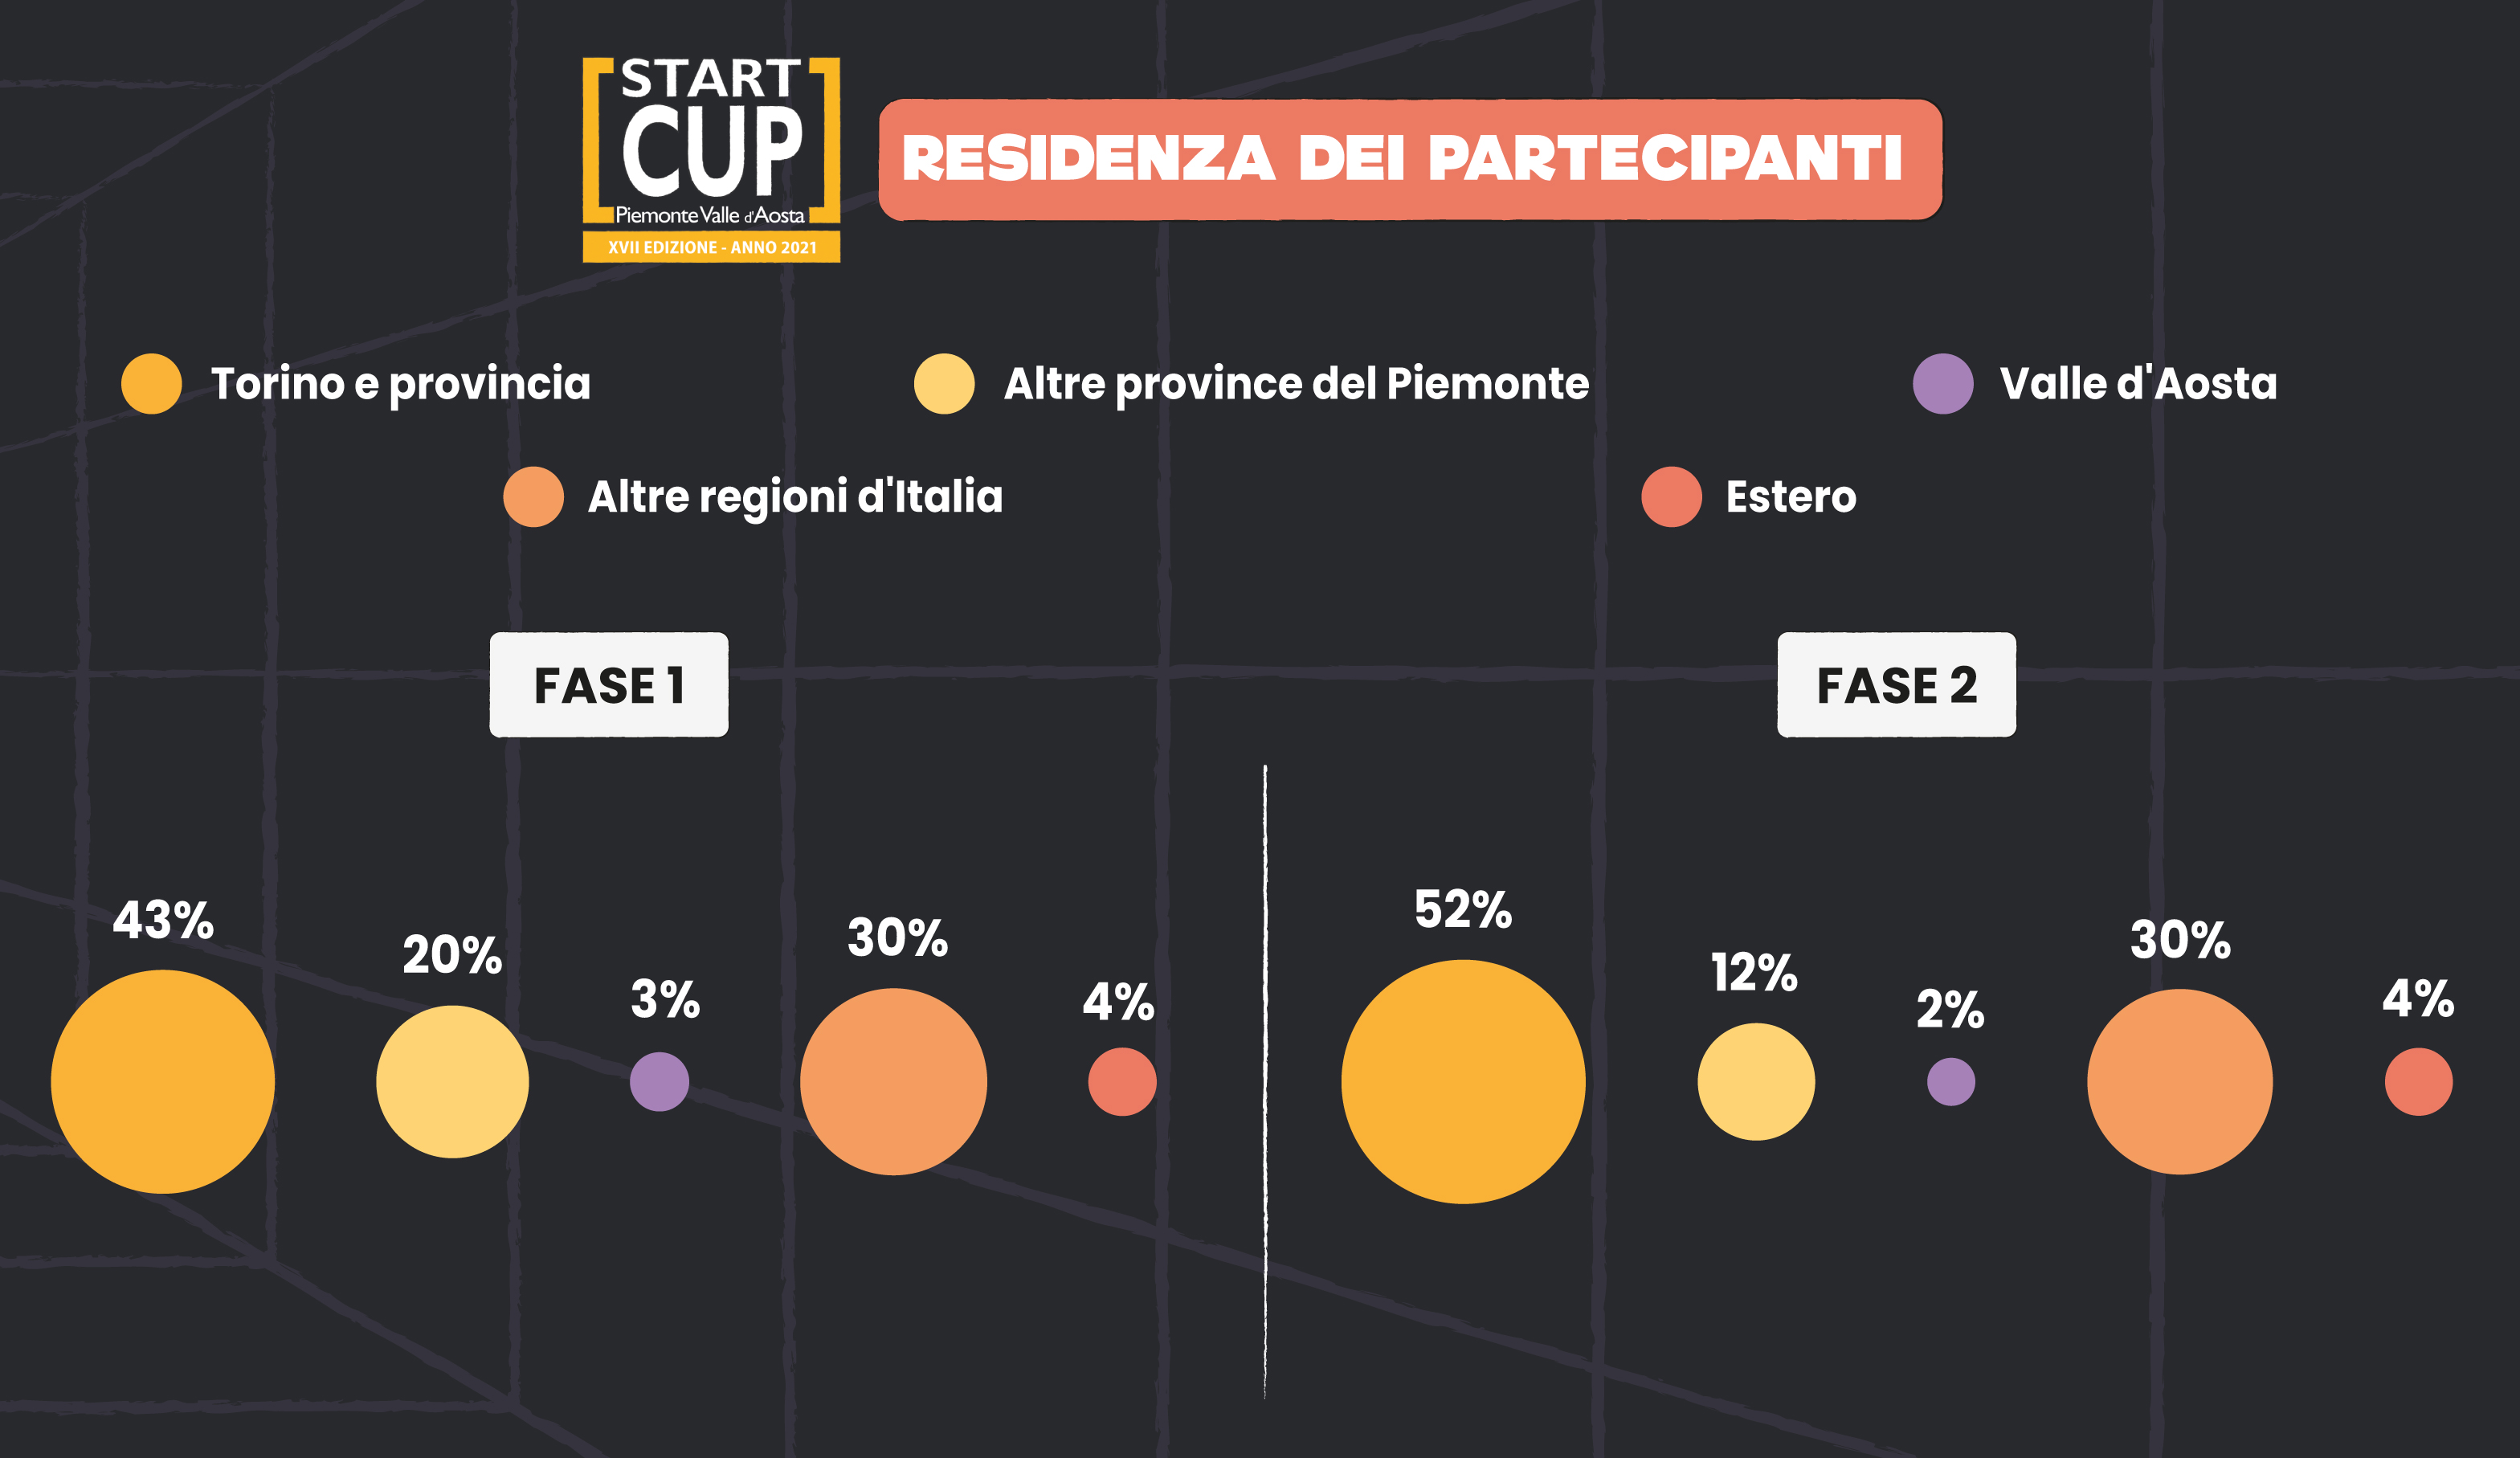 Start Cup Piemonte Valle d'Aosta - XVII Edizione - Statistiche 2021